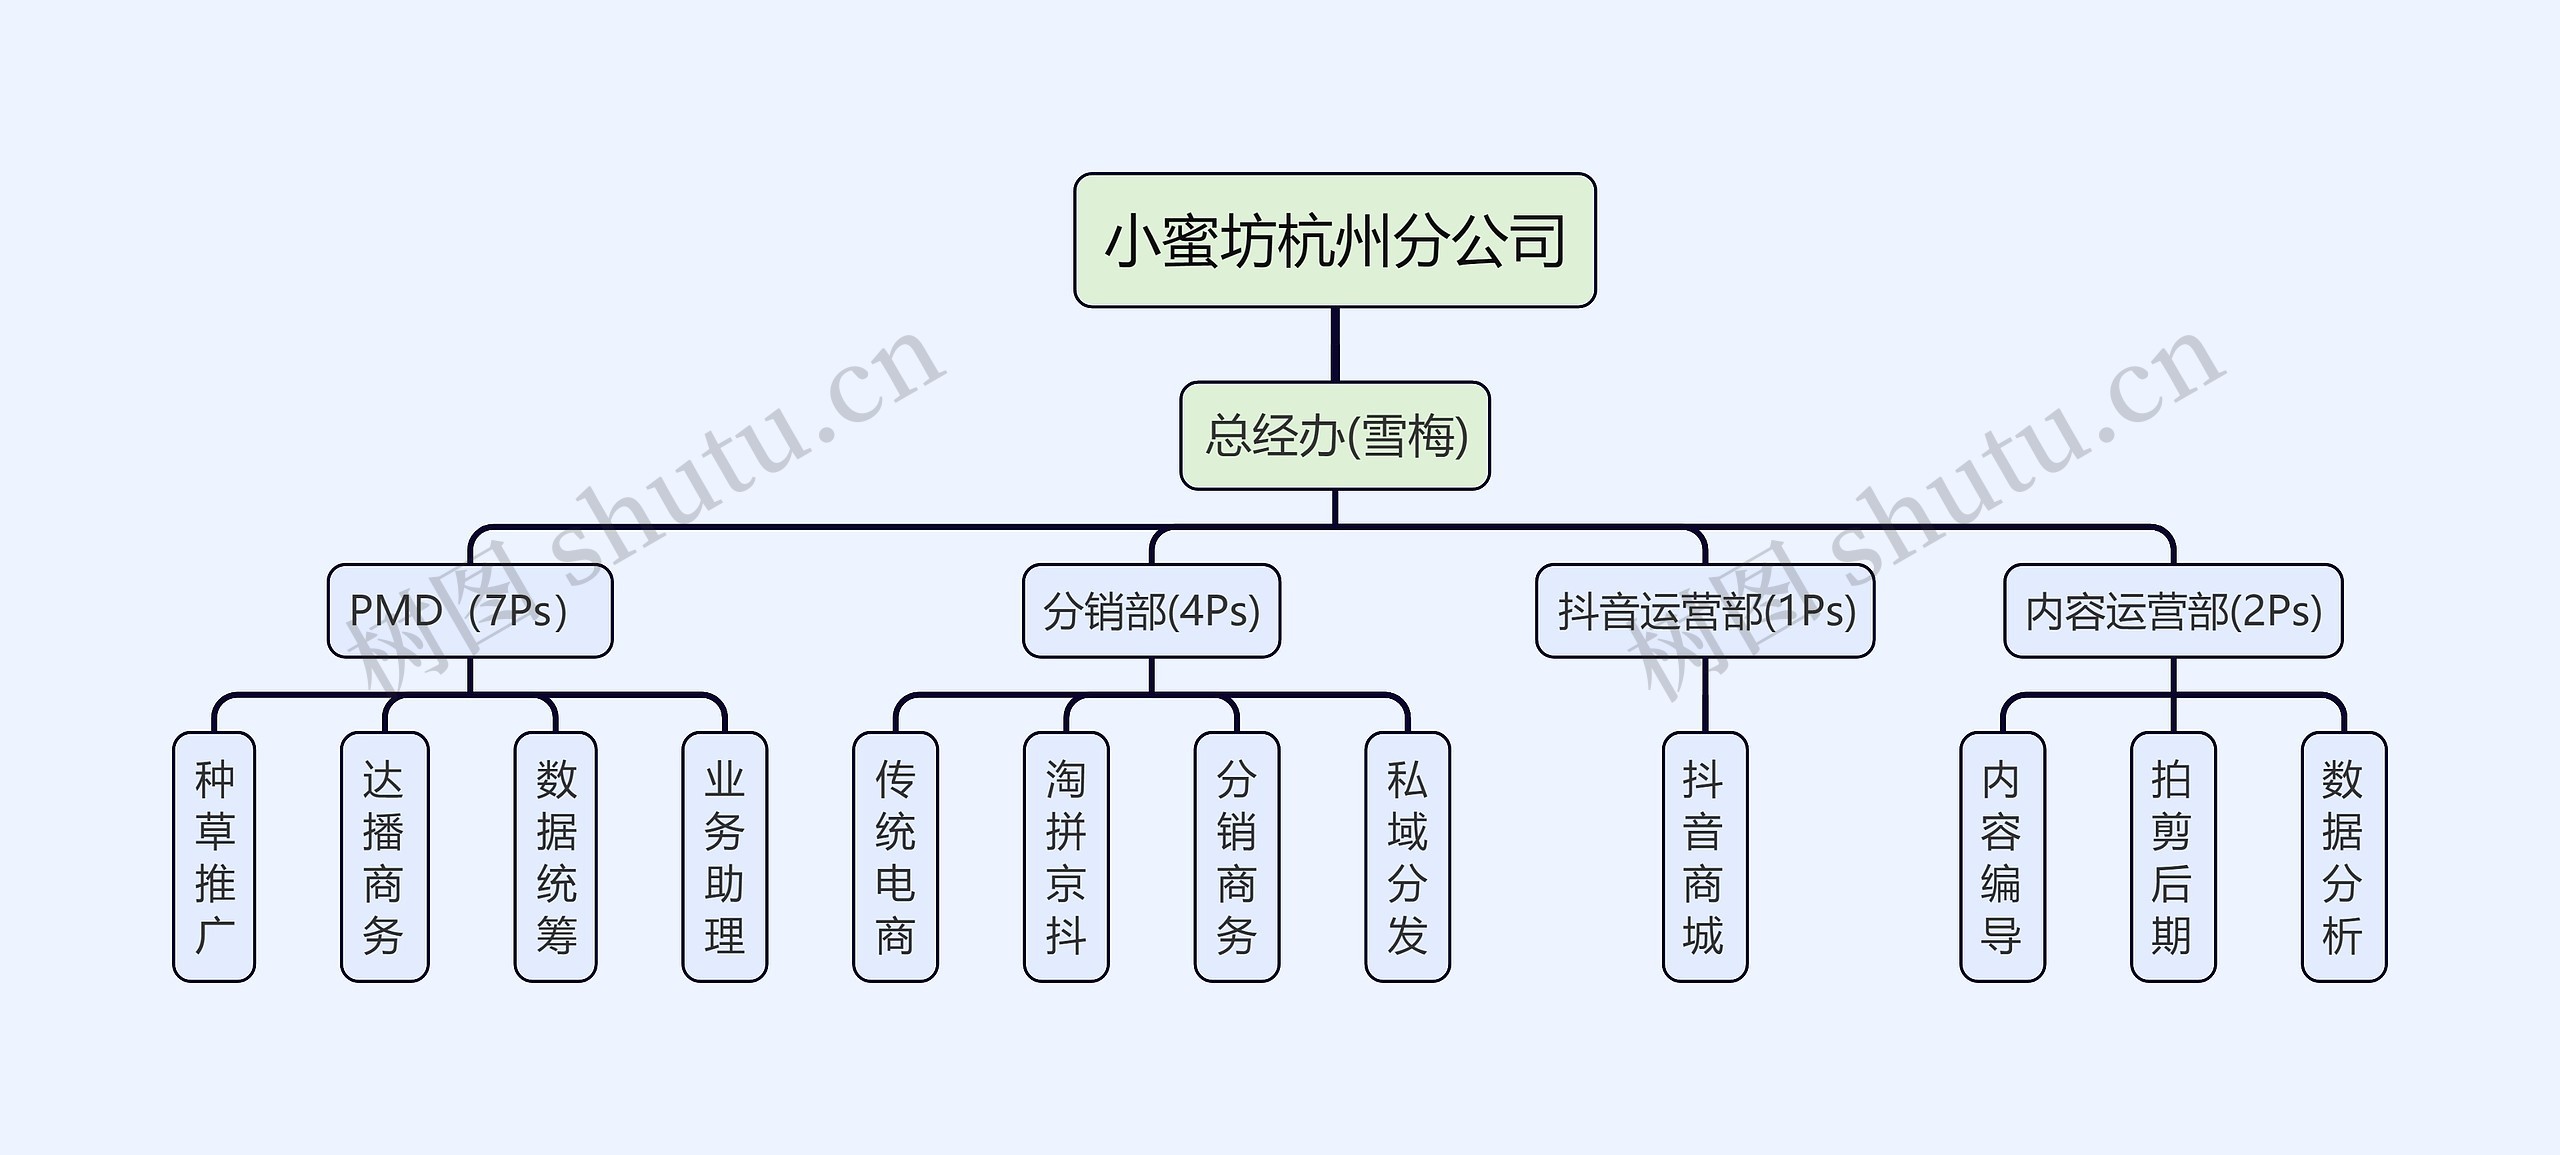 小蜜坊杭州分公司组织架构图